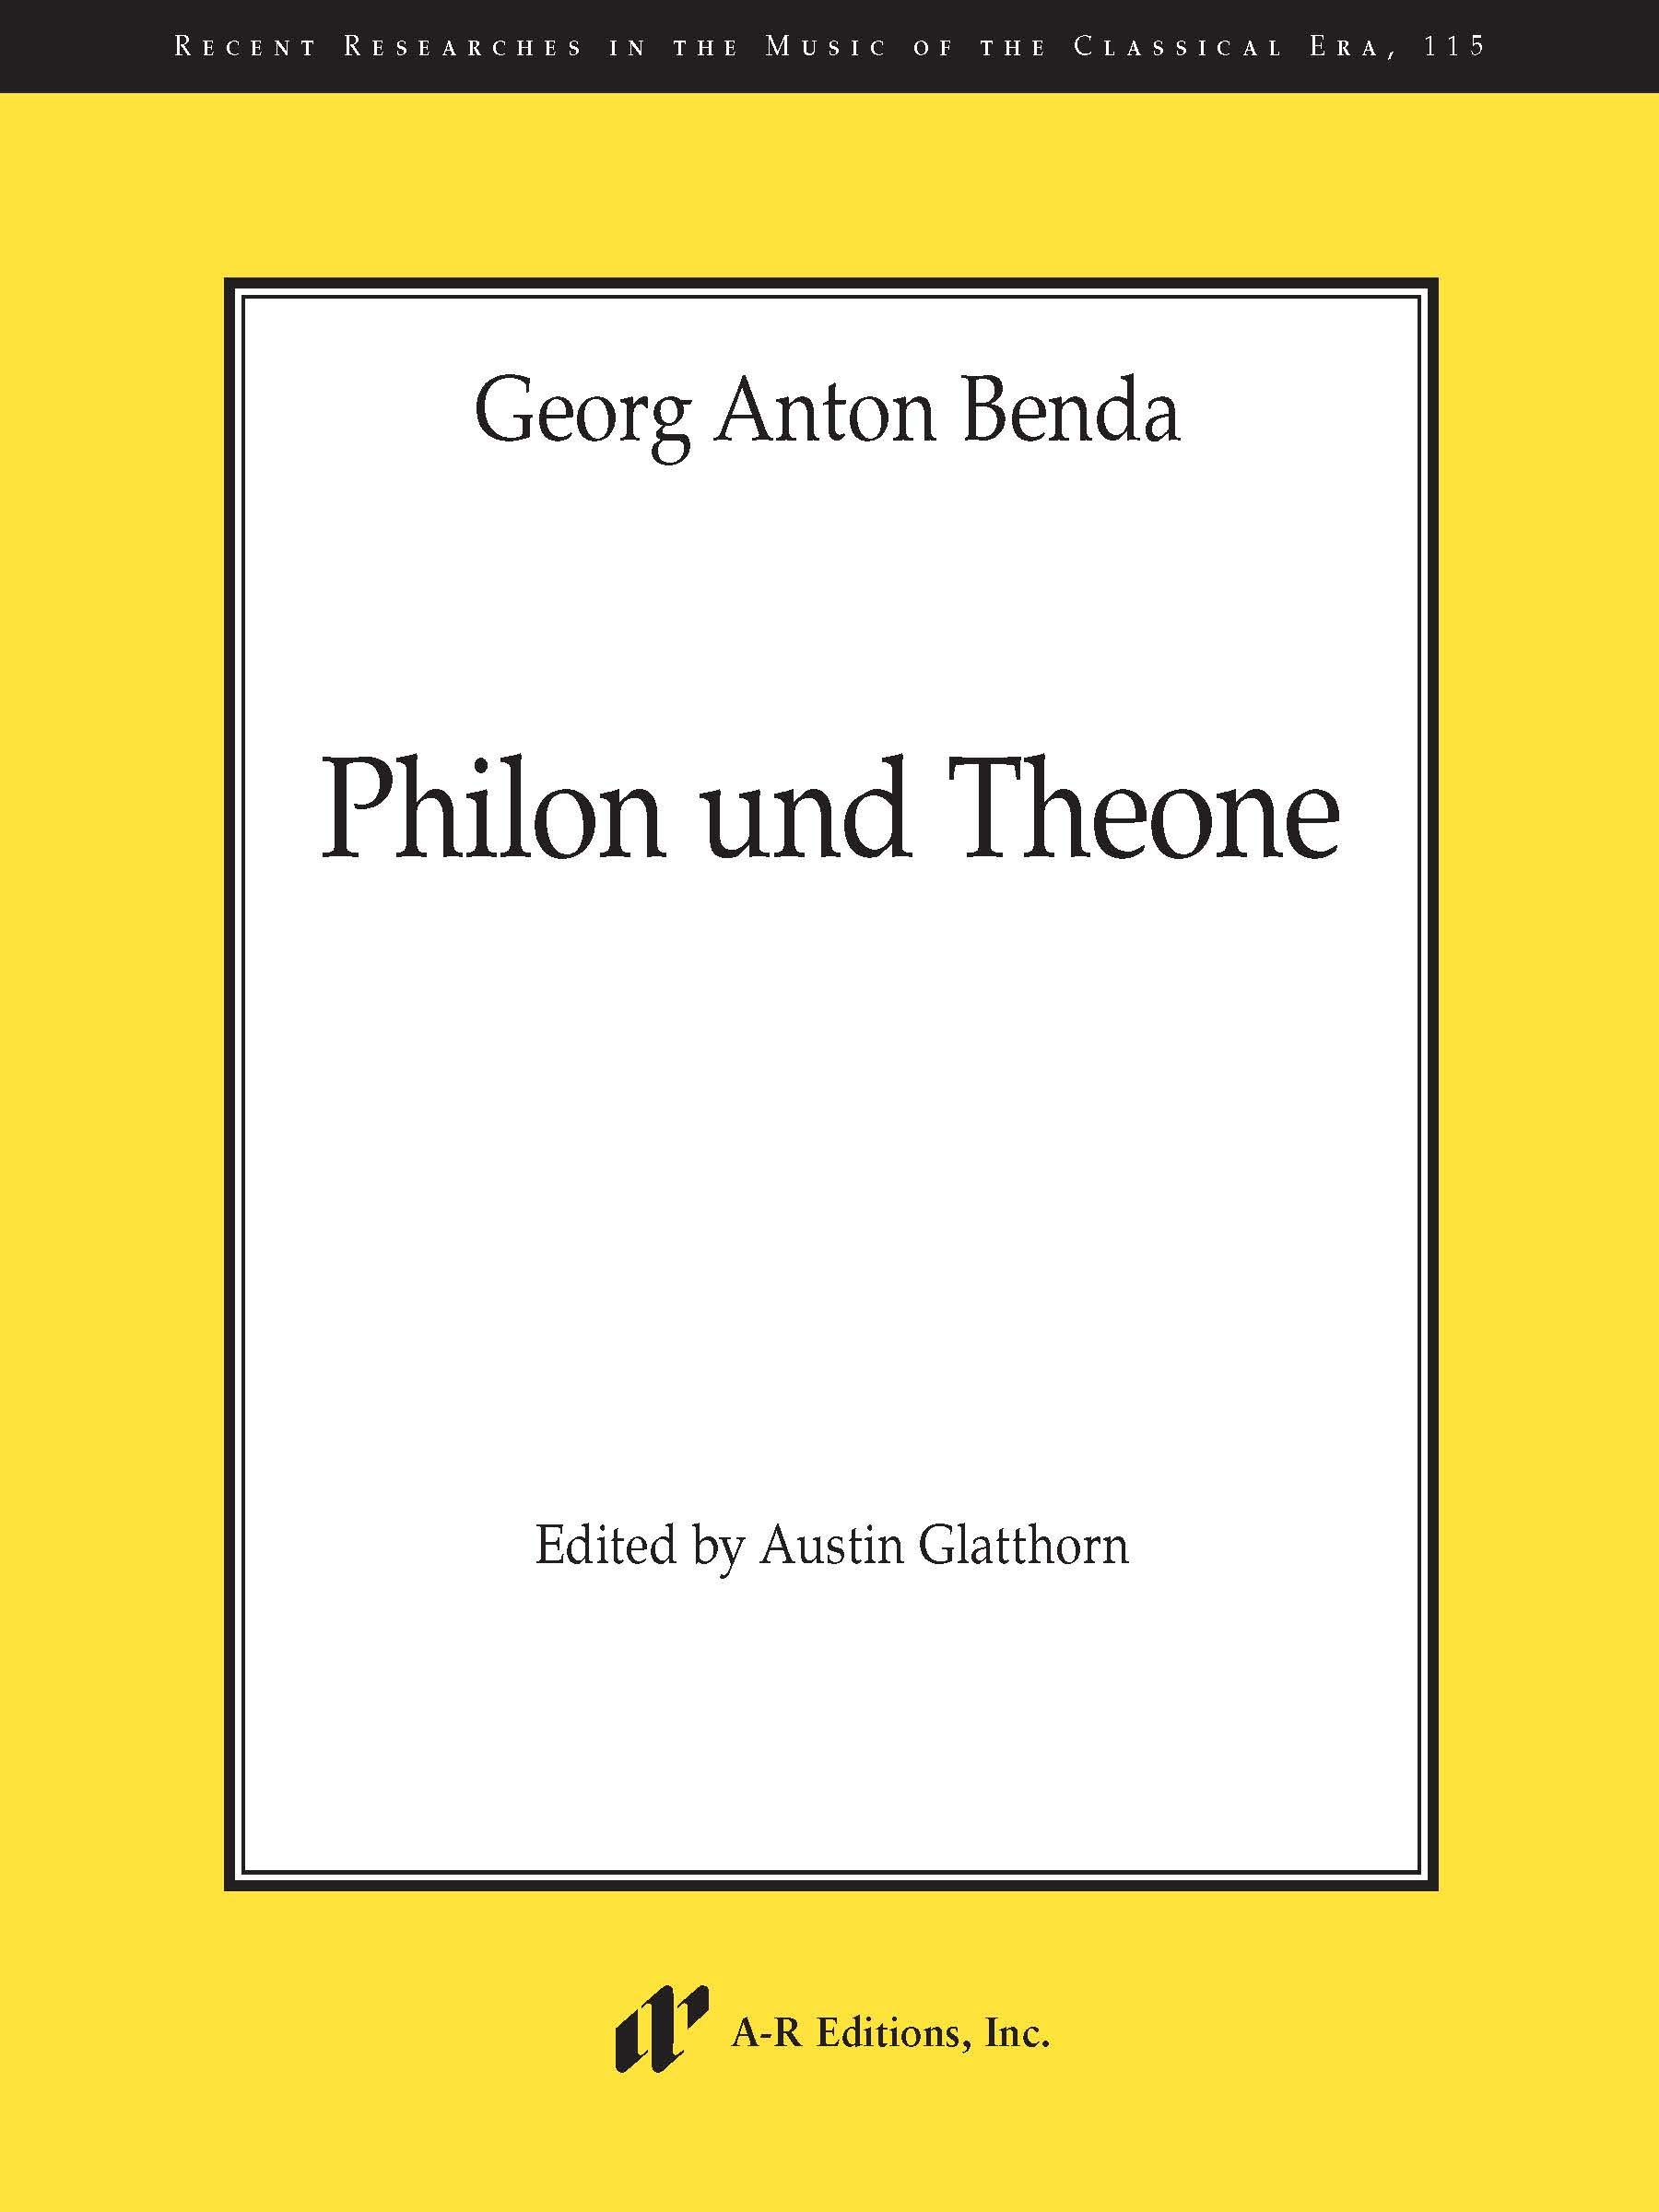 A-R Editions Benda "Philon und Theone"